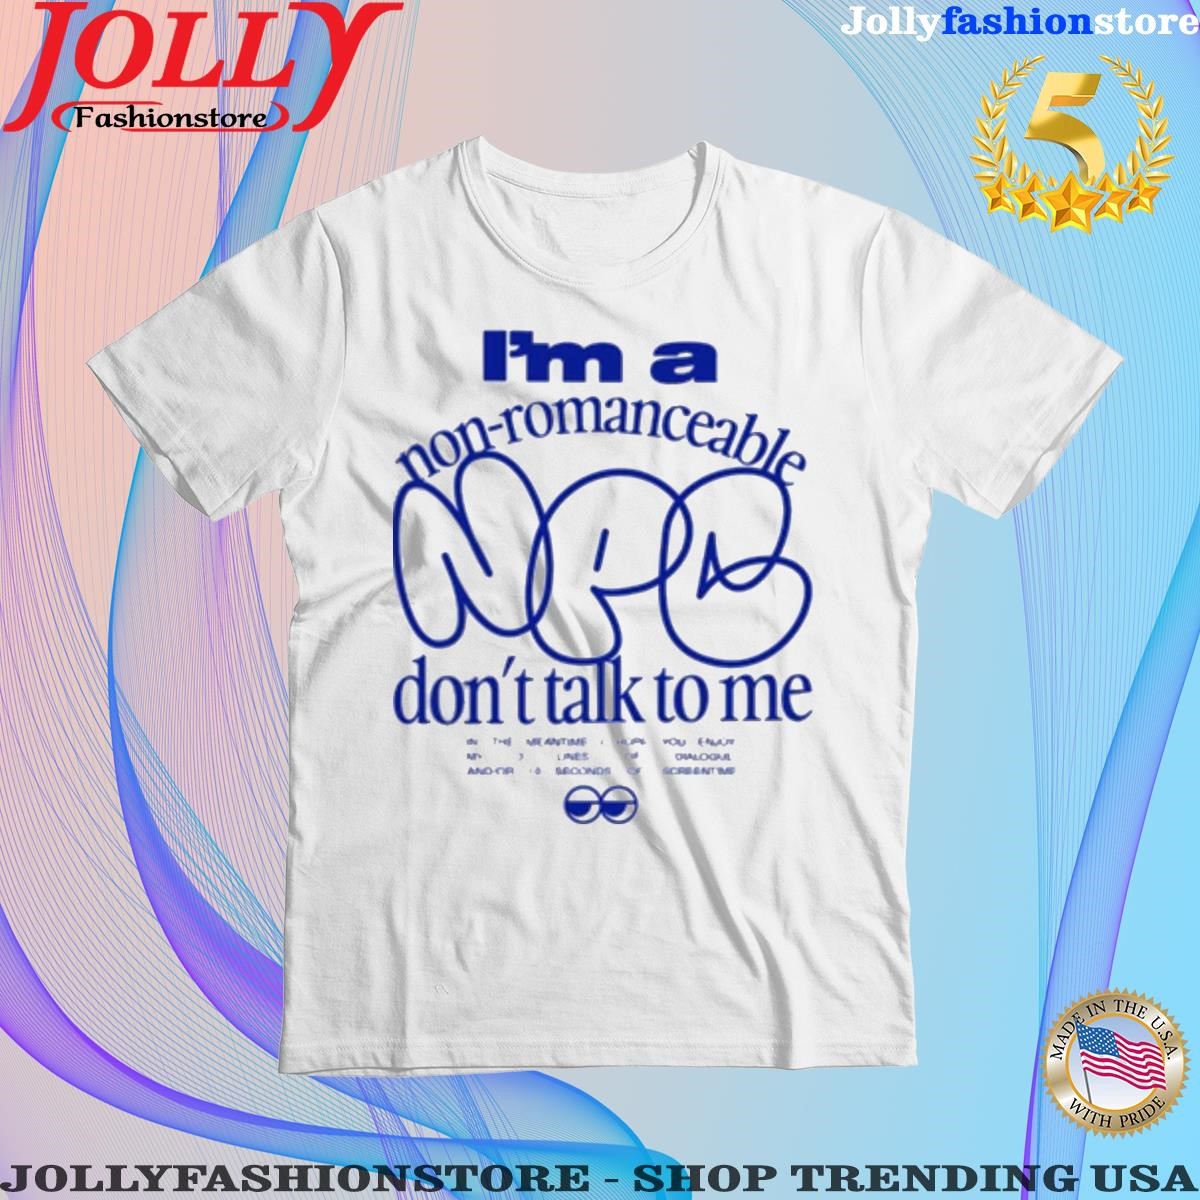 I'm a nonromanceable npc don't talk to me T-shirt